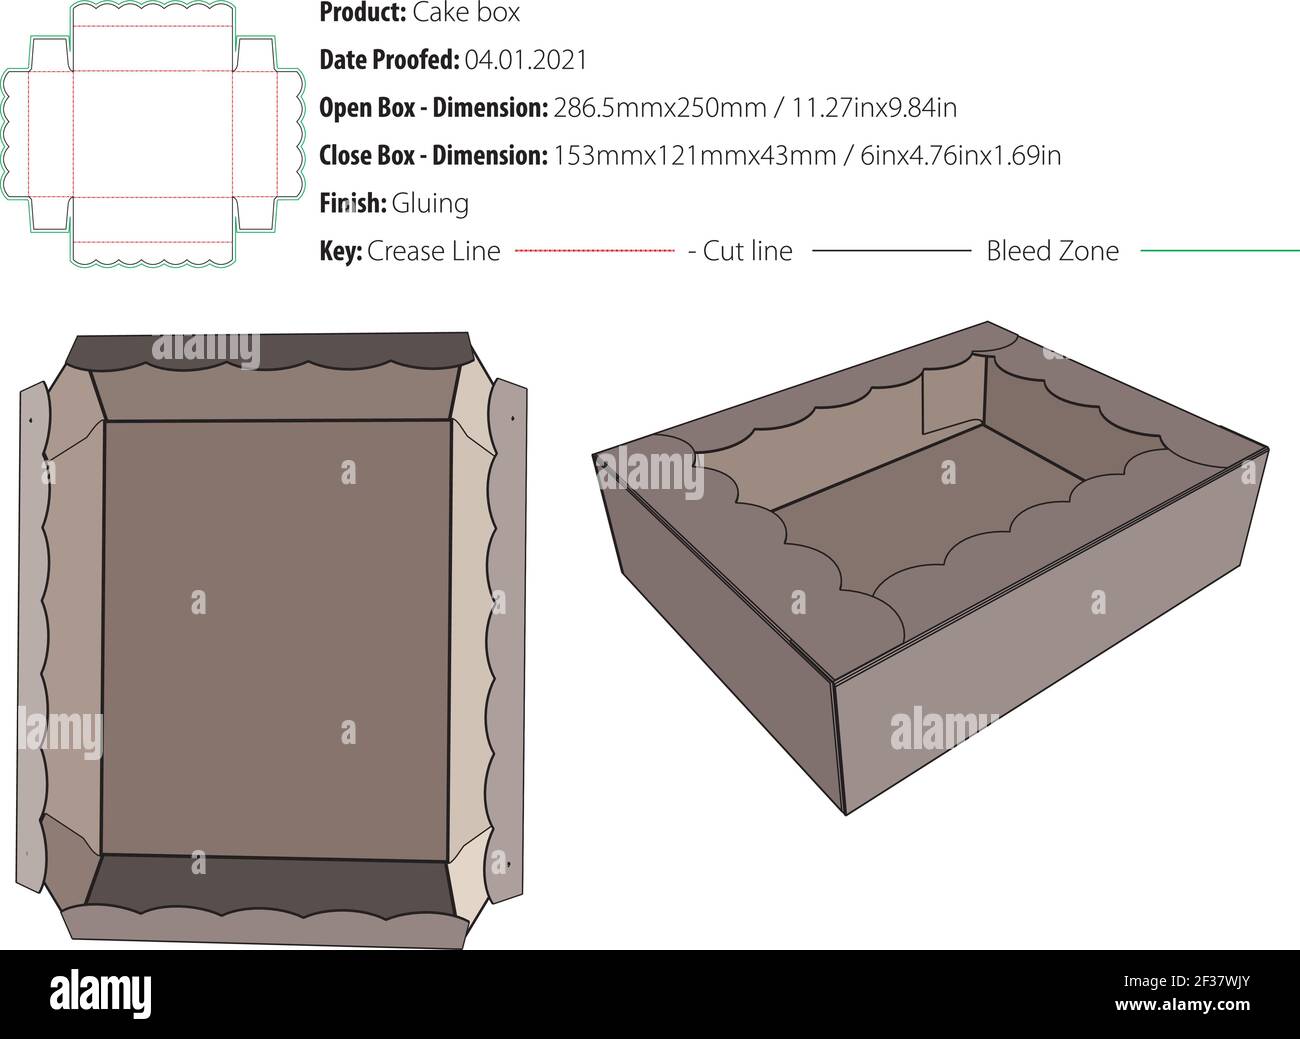 Kuchenbox Verpackung Design Vorlage kleben Stanzform geschnitten - Vektor Stock Vektor